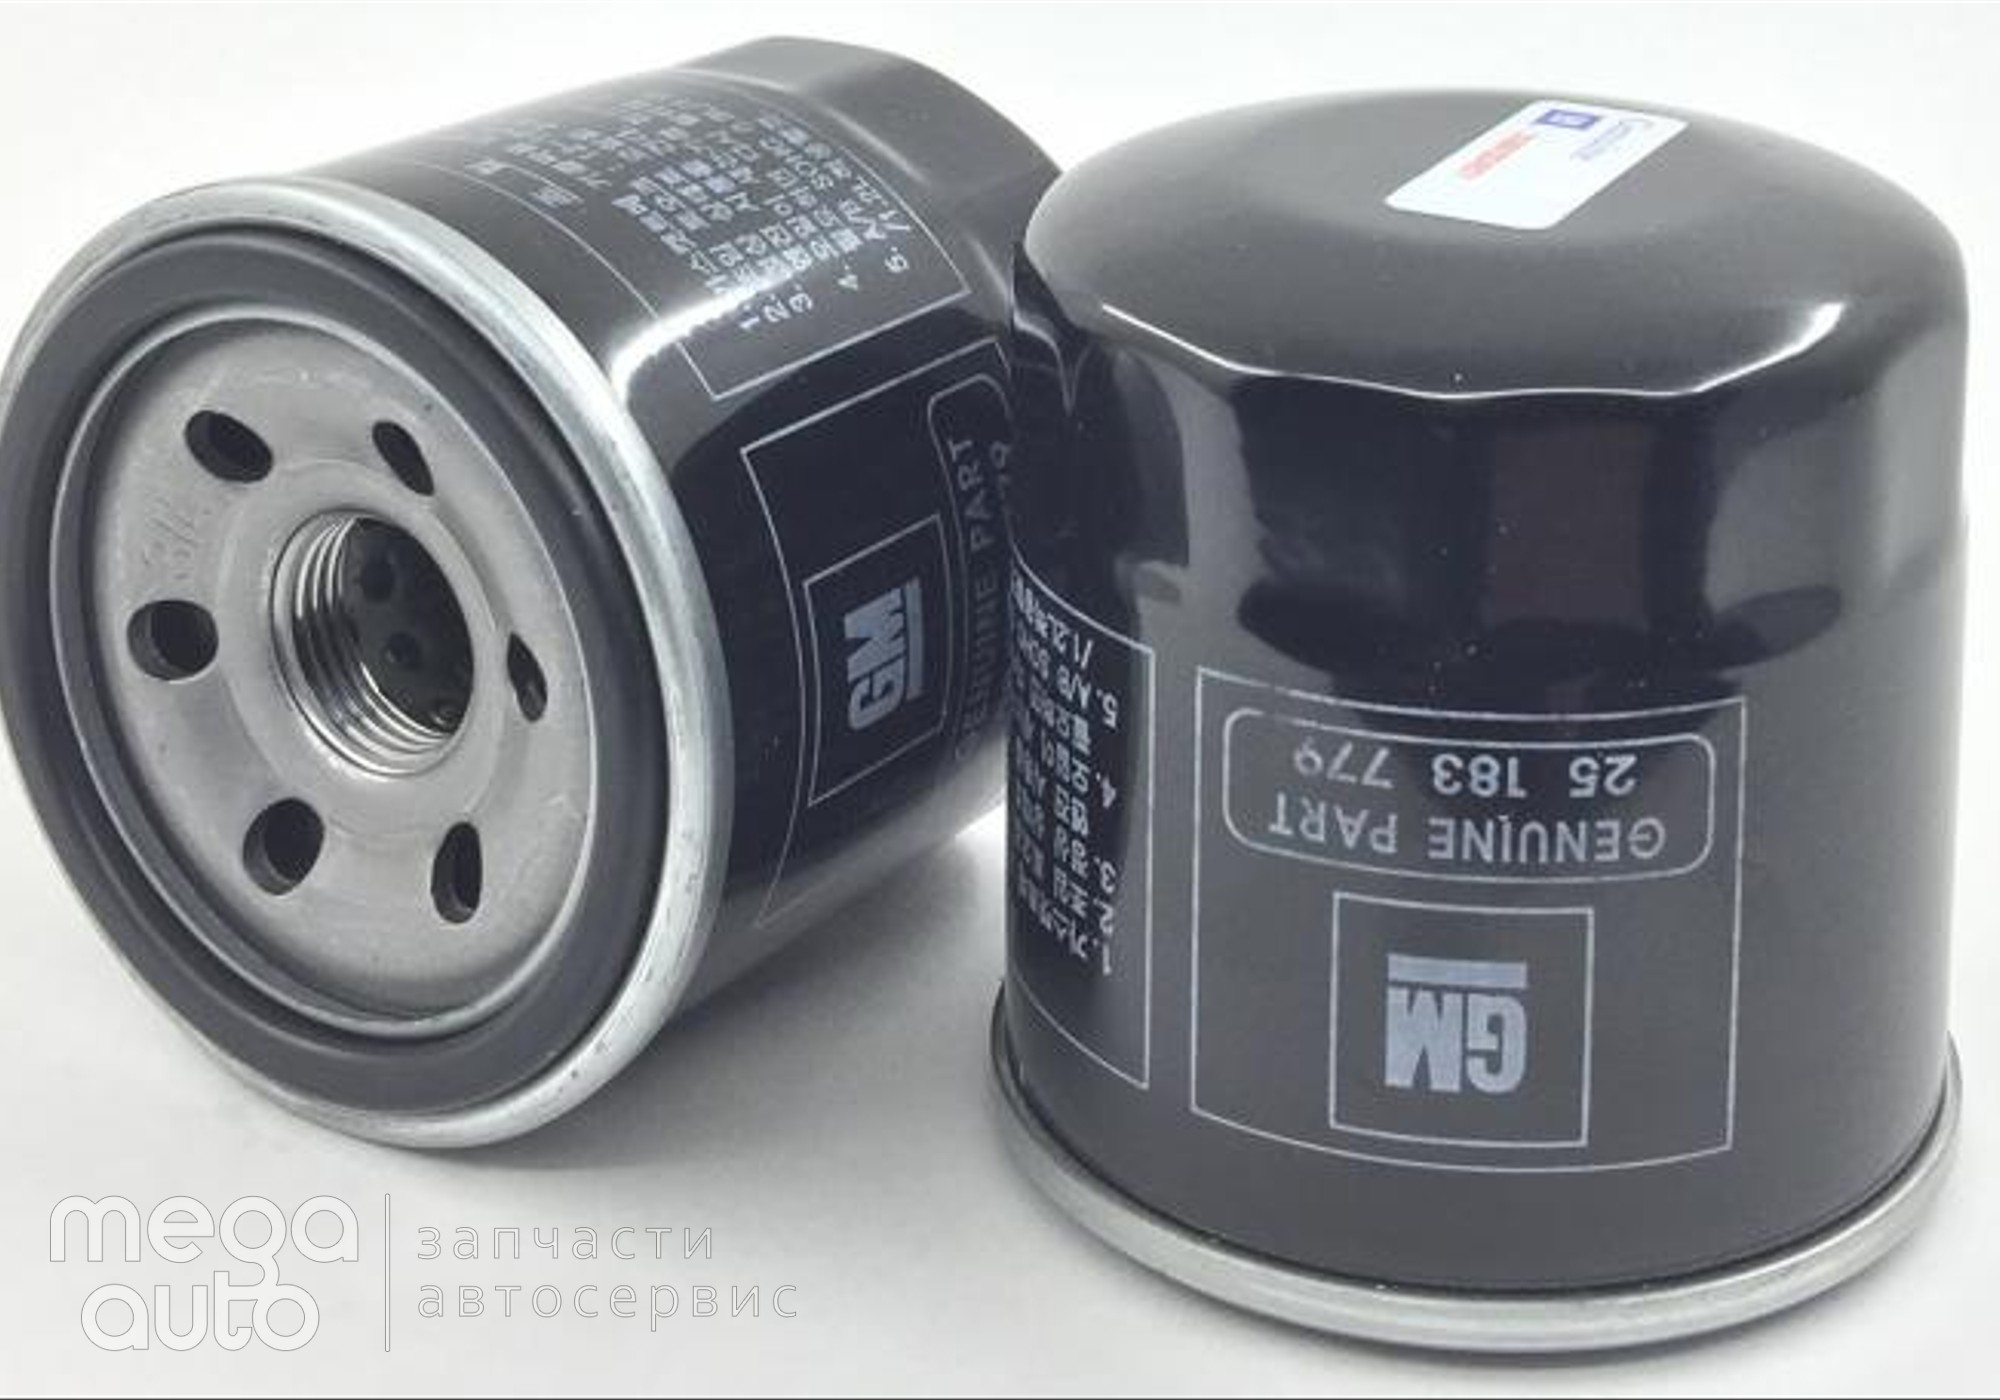 25183779 Масляный фильтр шевроле, део, сузуки(GM) для Volkswagen Polo II (с 1981 по 1994)